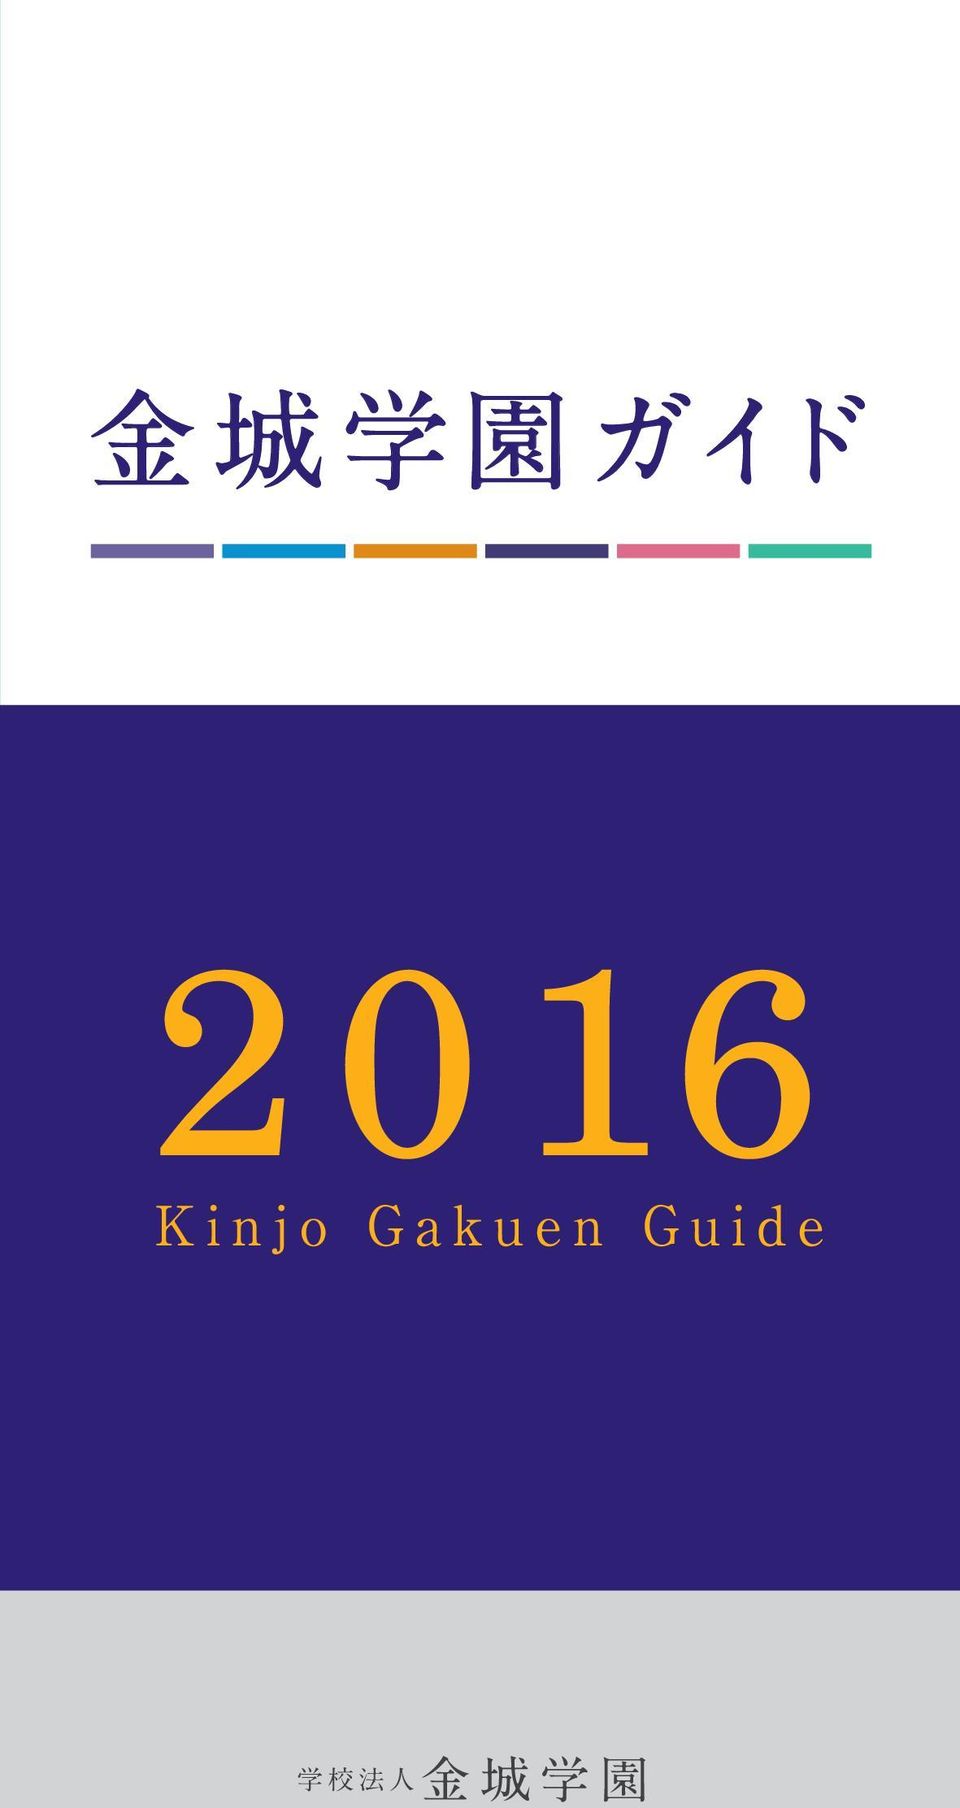 Gakuen Guide